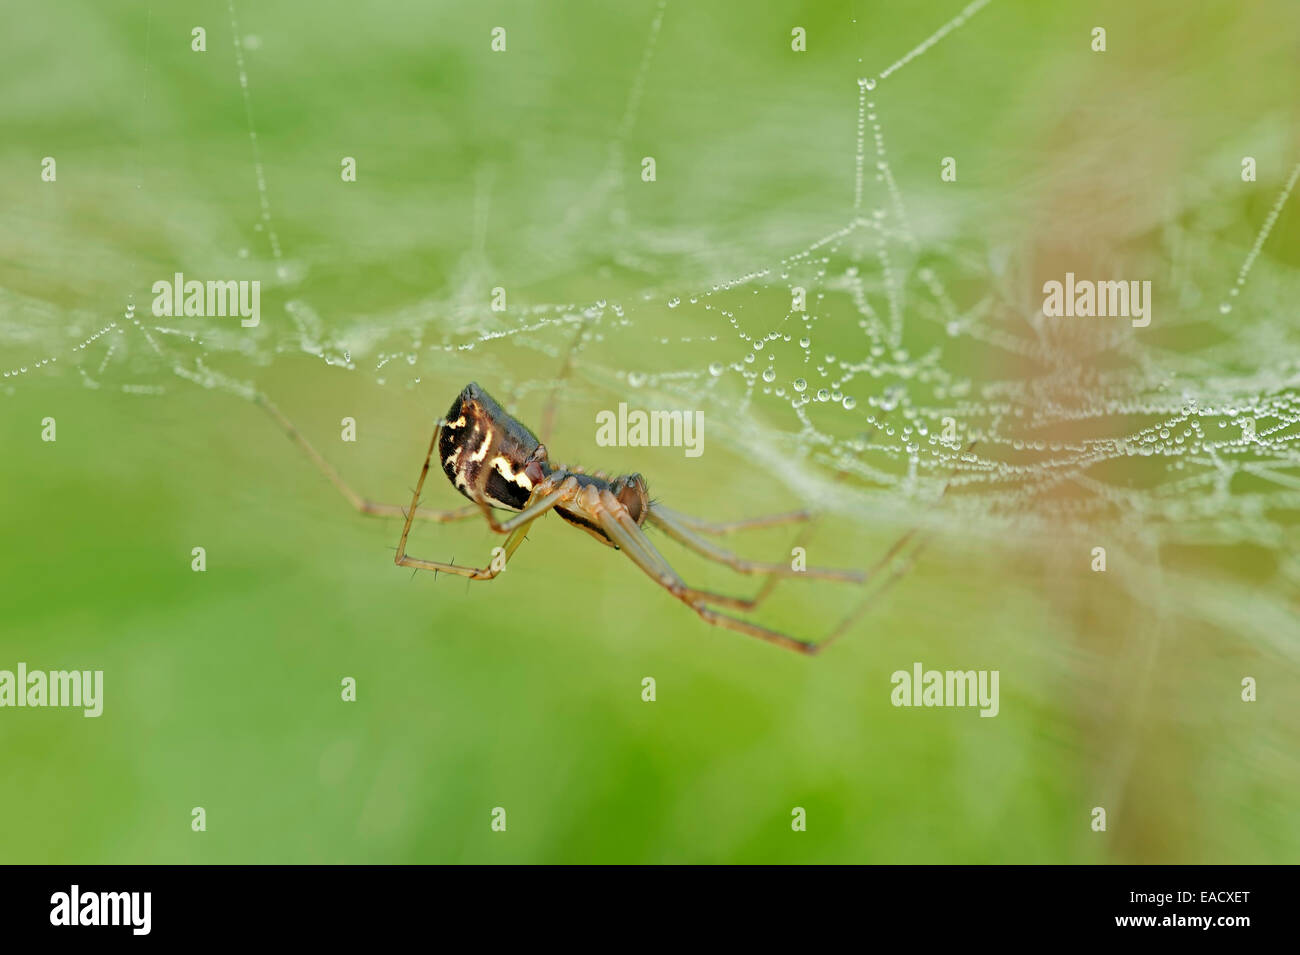 Hoja europeo-web spider (Linyphia triangularis) en una web, Renania del Norte-Westfalia, Alemania Foto de stock